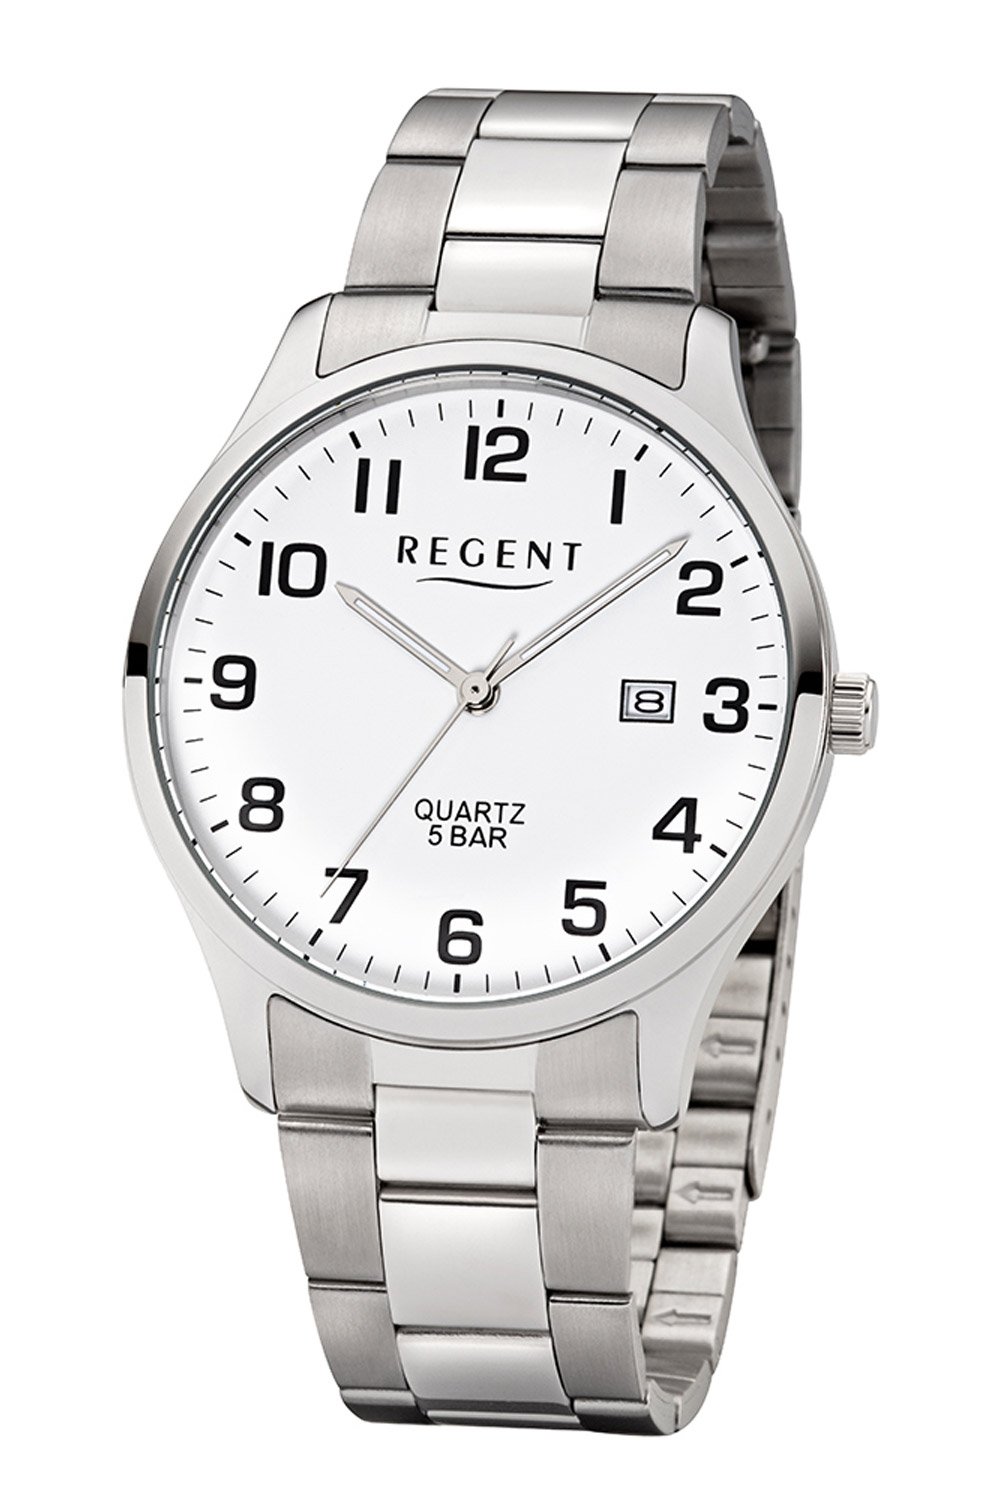 White with Strap F-1178 Regent Steel • Men\'s uhrcenter Watch